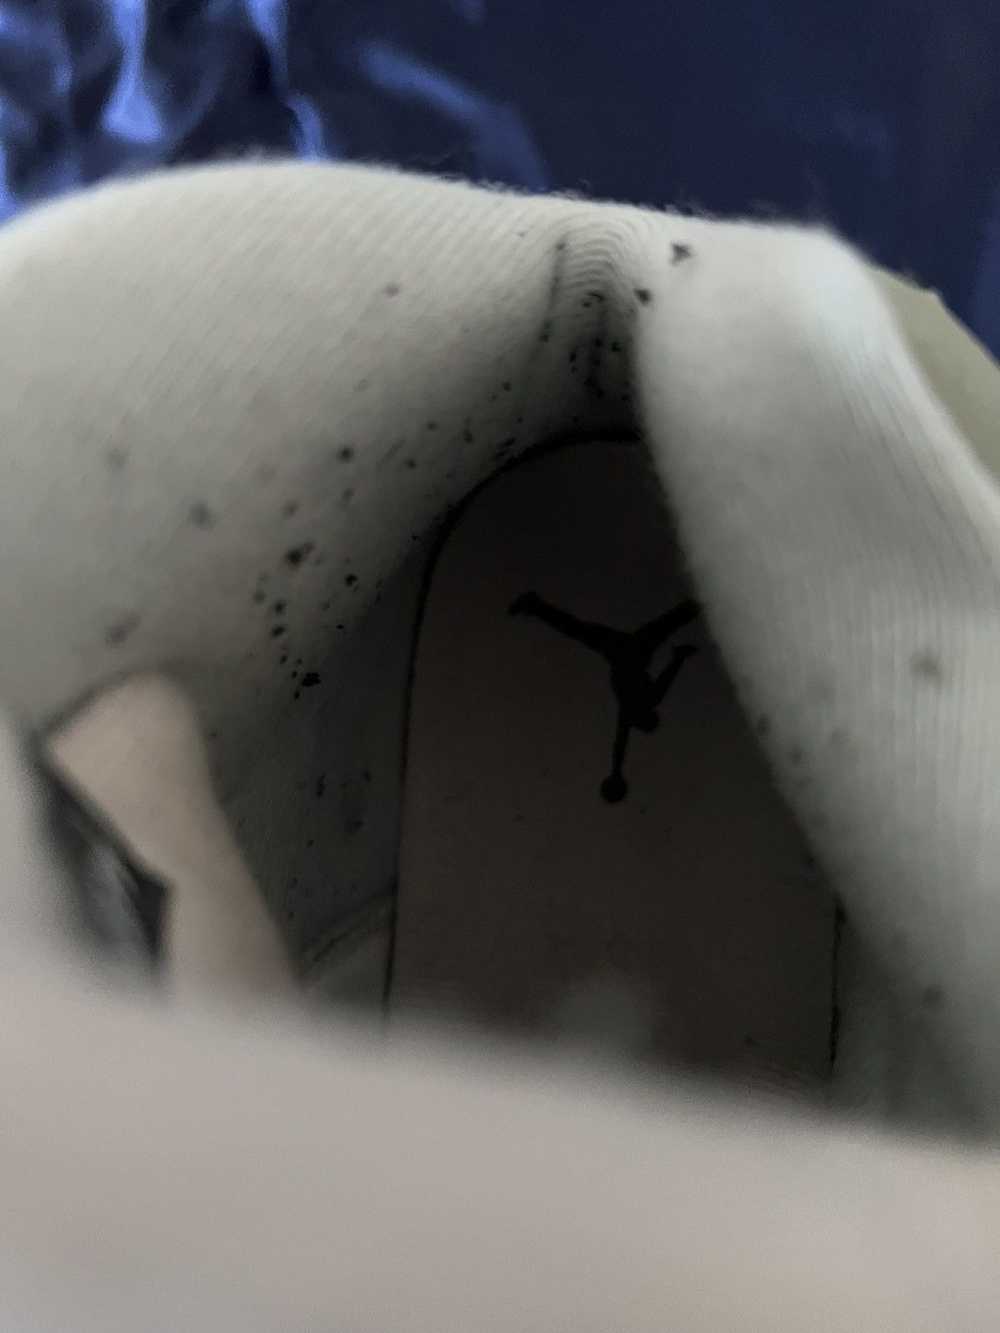 Jordan Brand Nike Air Jordan 5 “Jade” - image 10